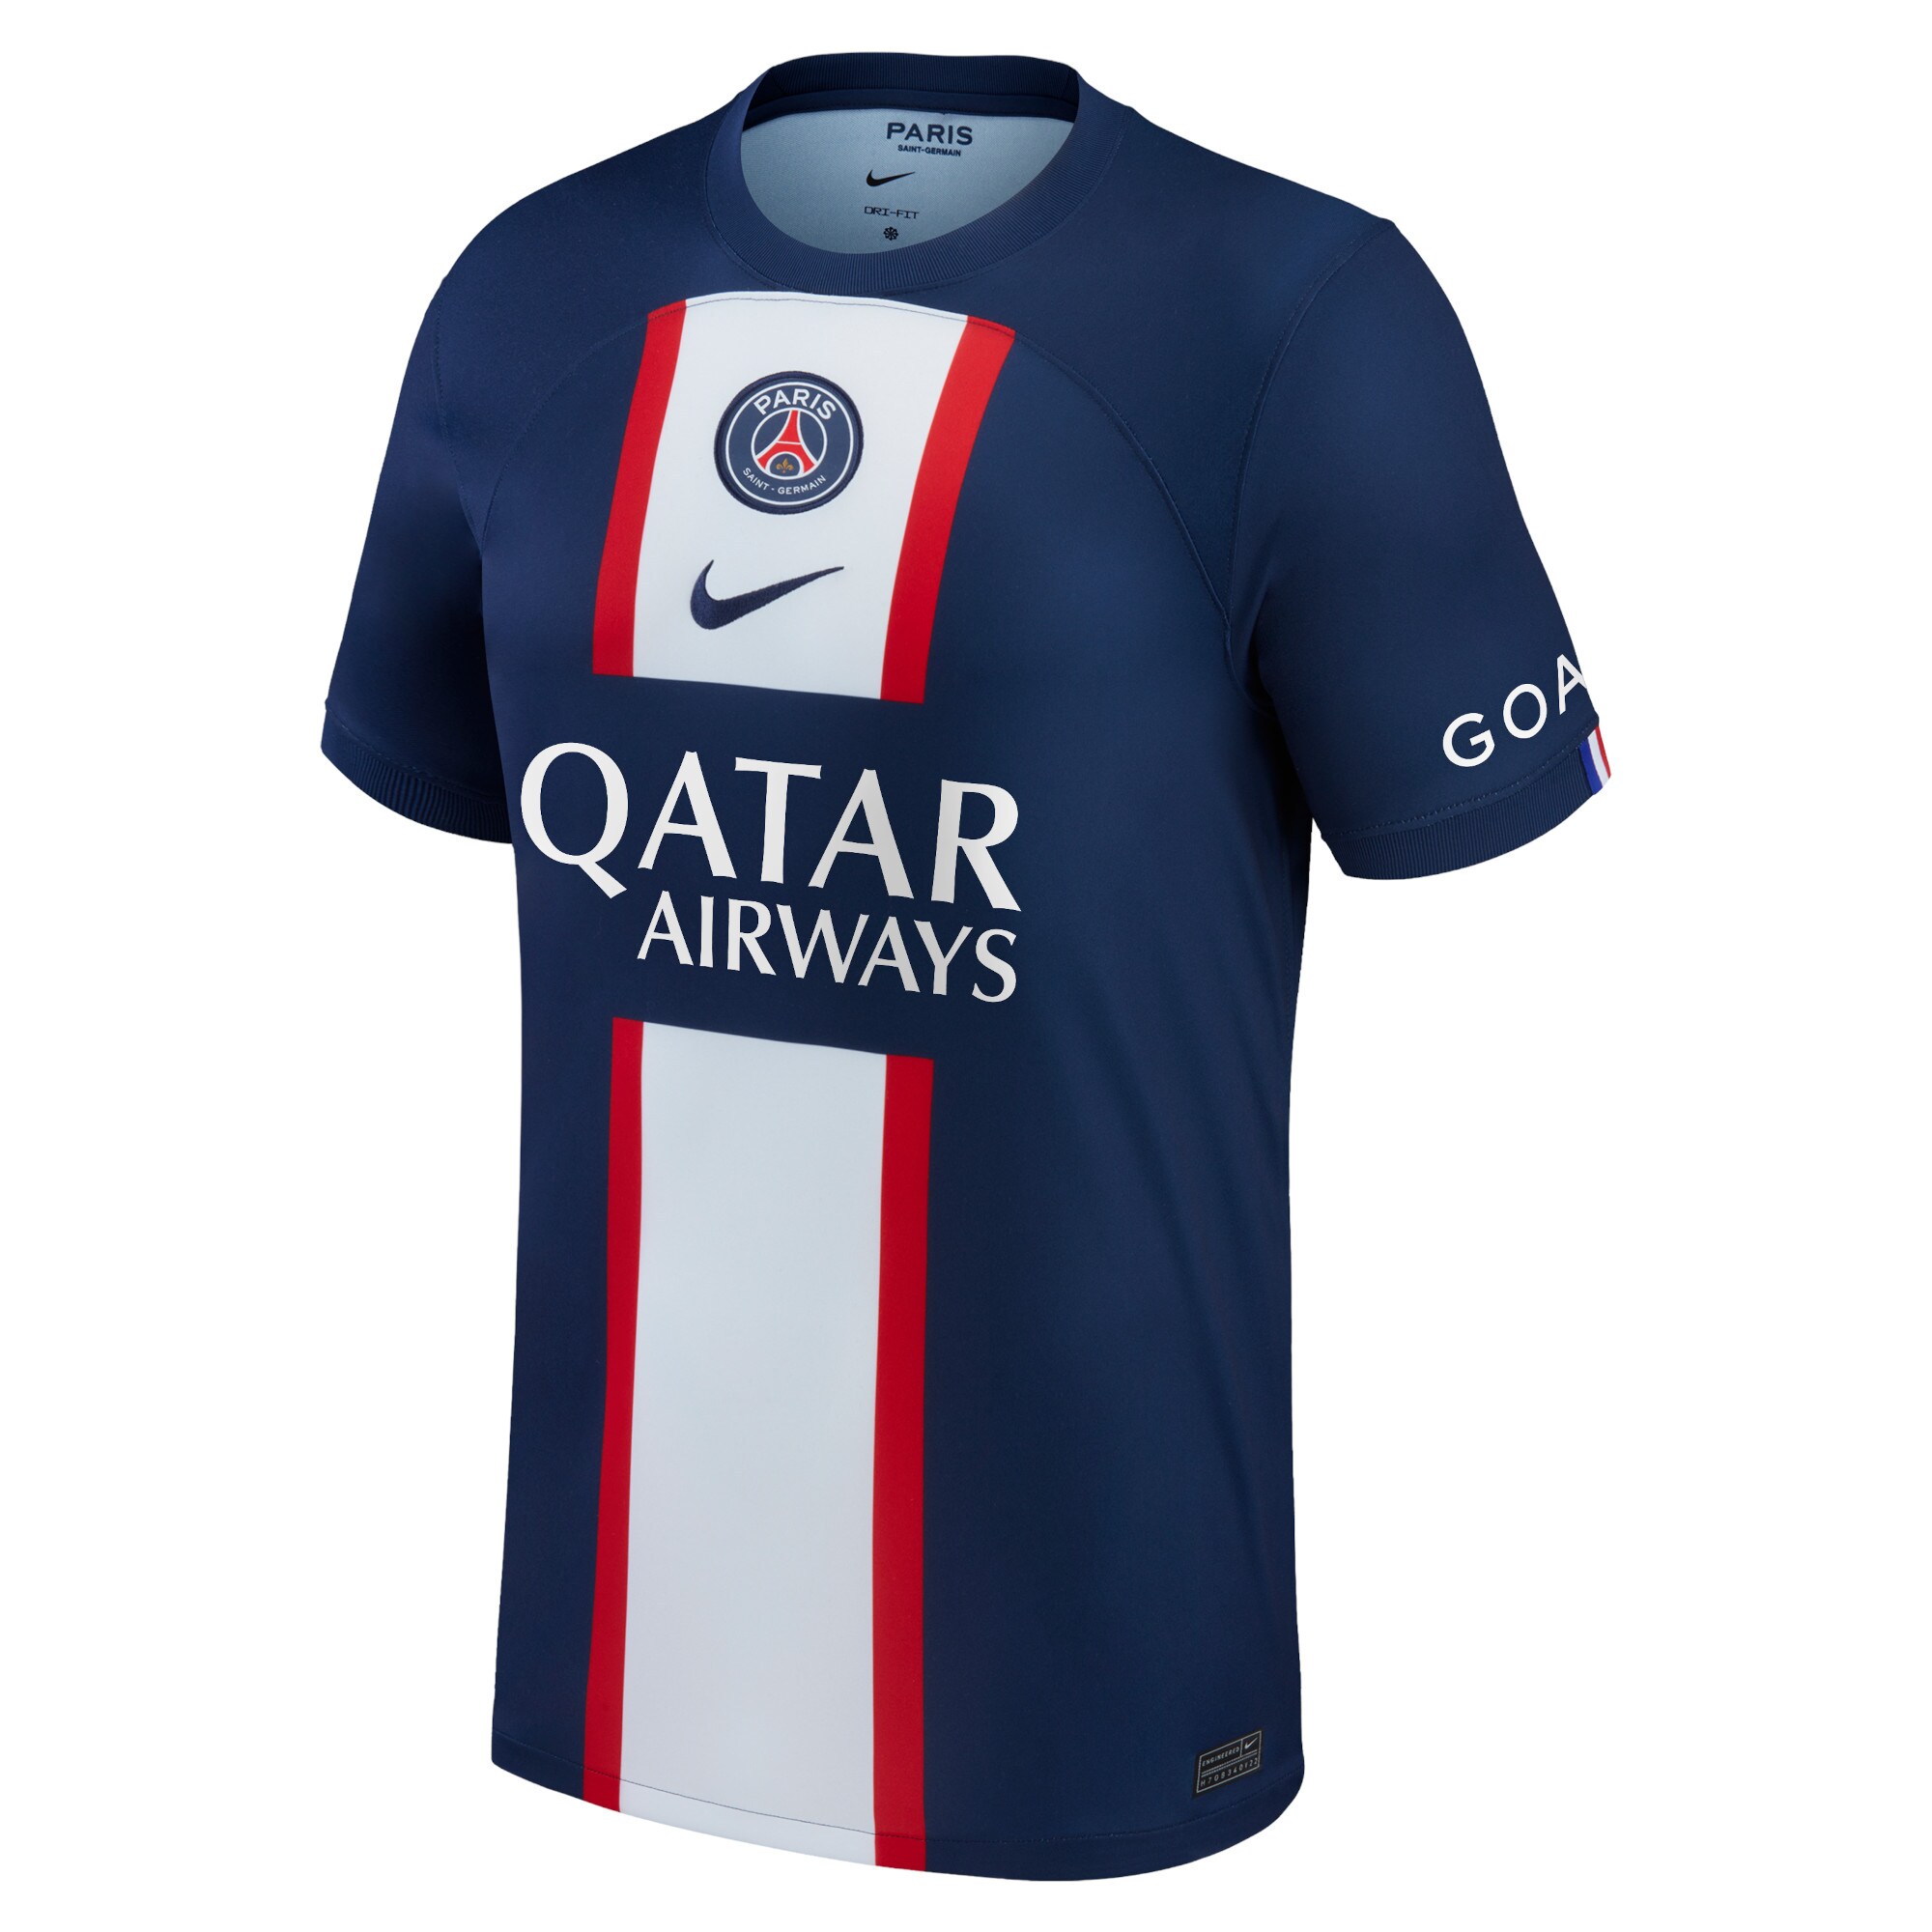 Paris Saint-Germain Home Stadium Shirt 2022-23 with Danilo 15 printing